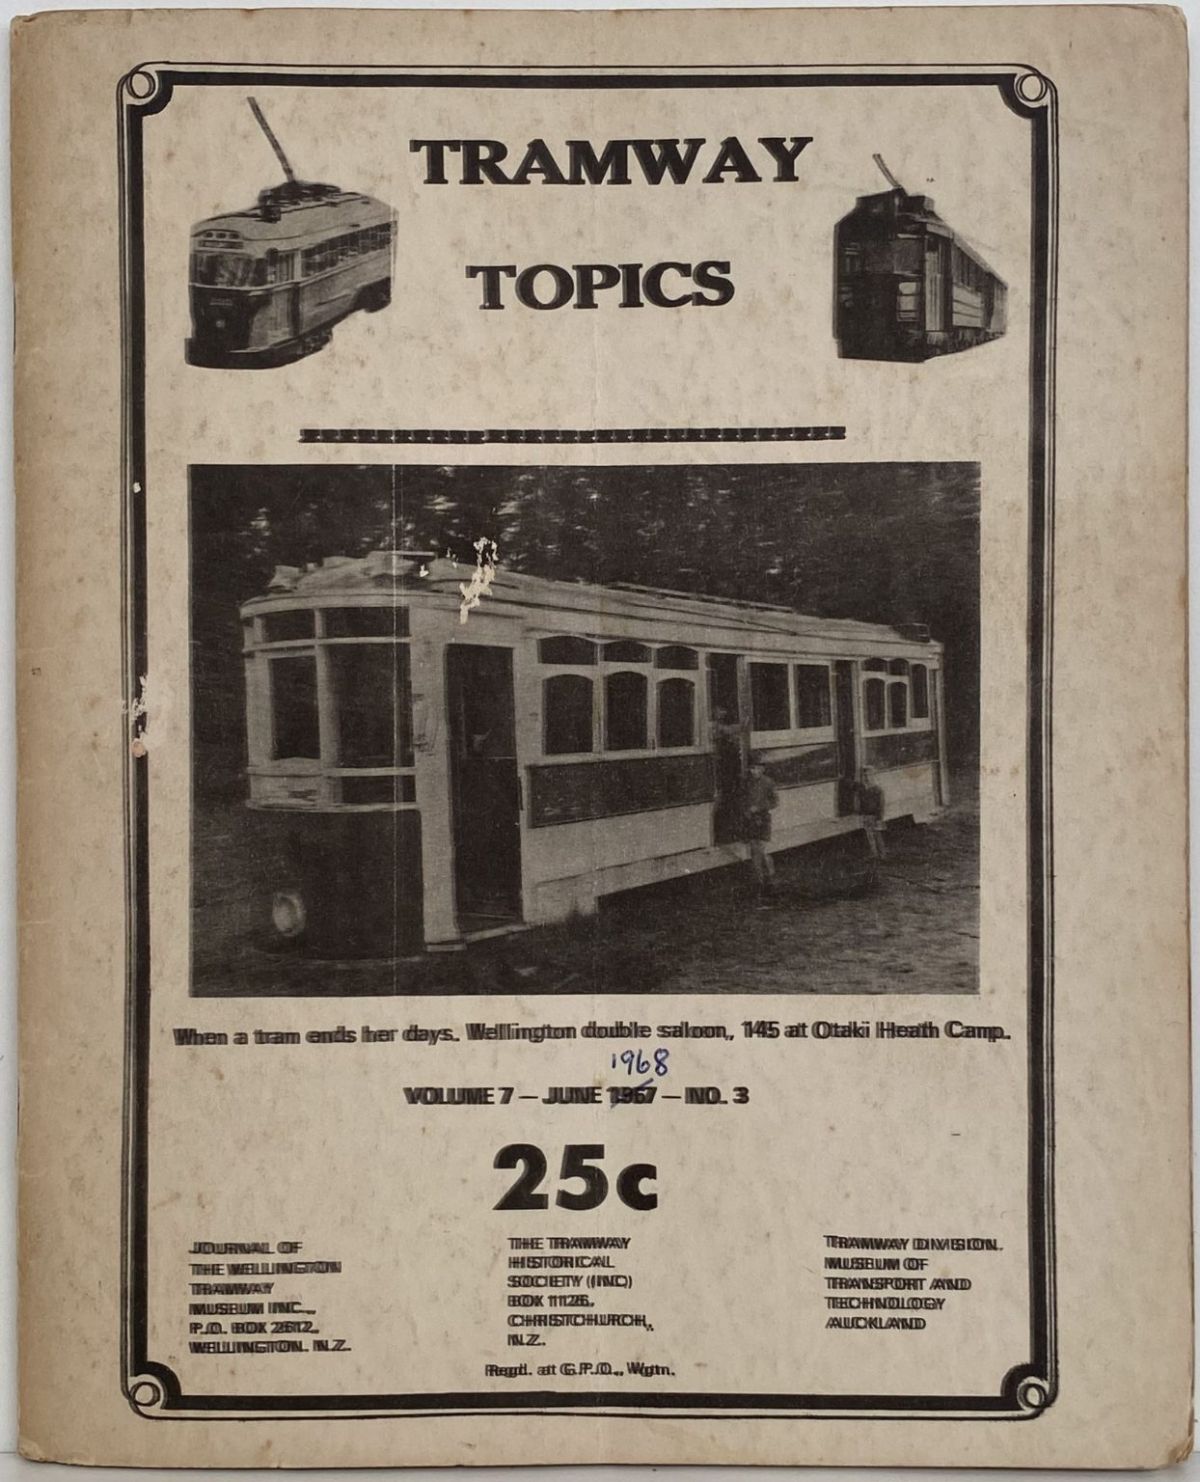 TRAMWAY TOPICS Vol 7, No 3, June 1968